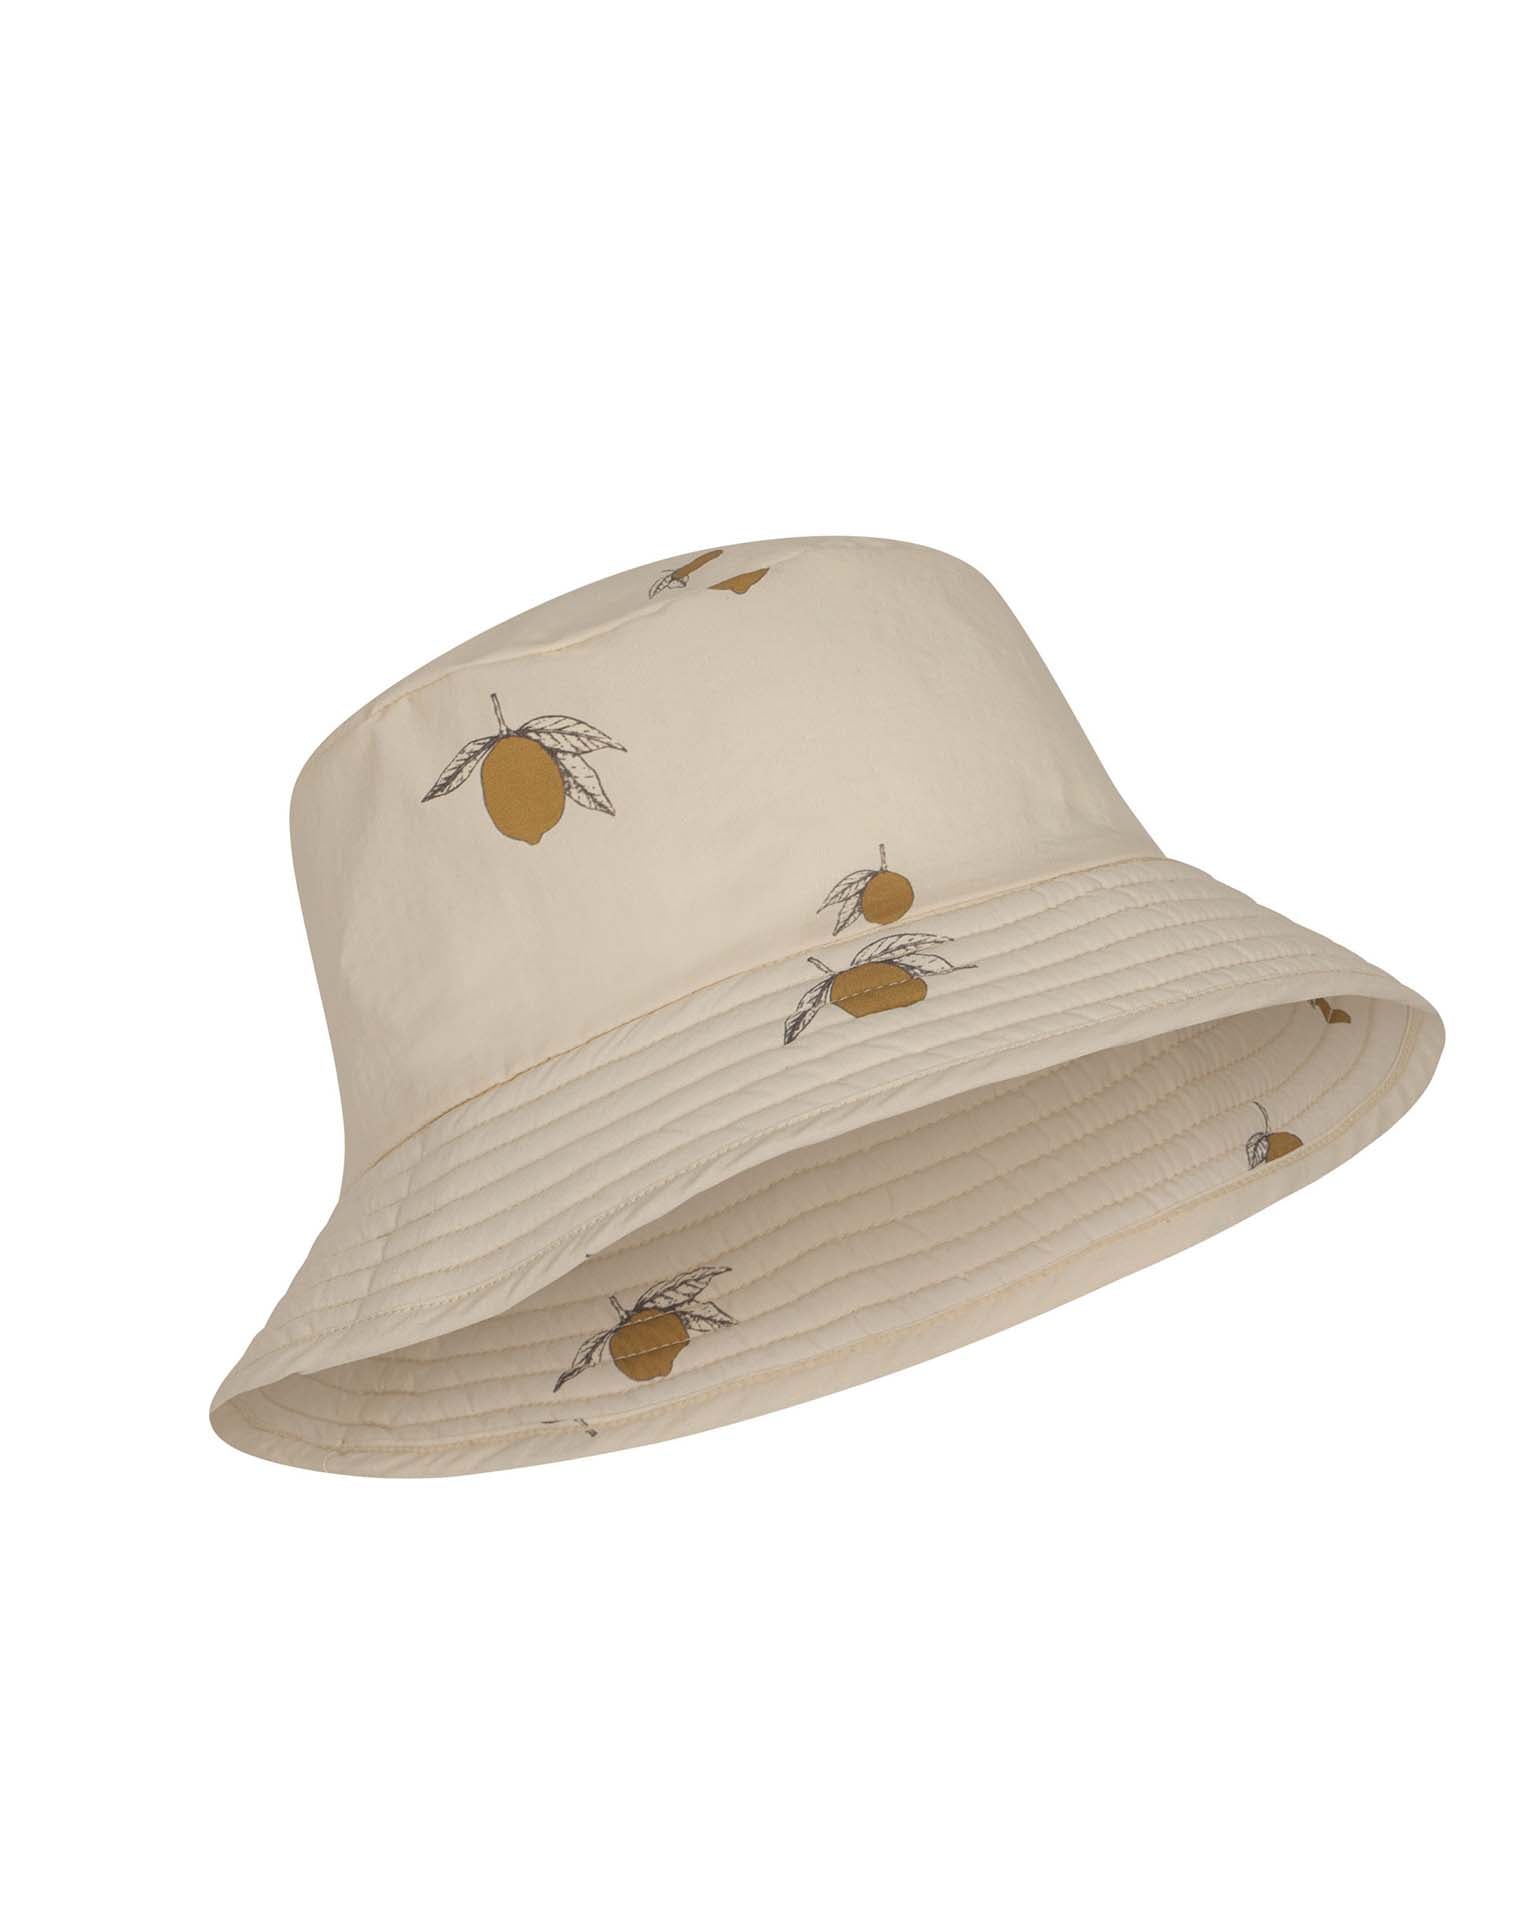 Little konges sløjd accessories asnou bucket hat in lemon